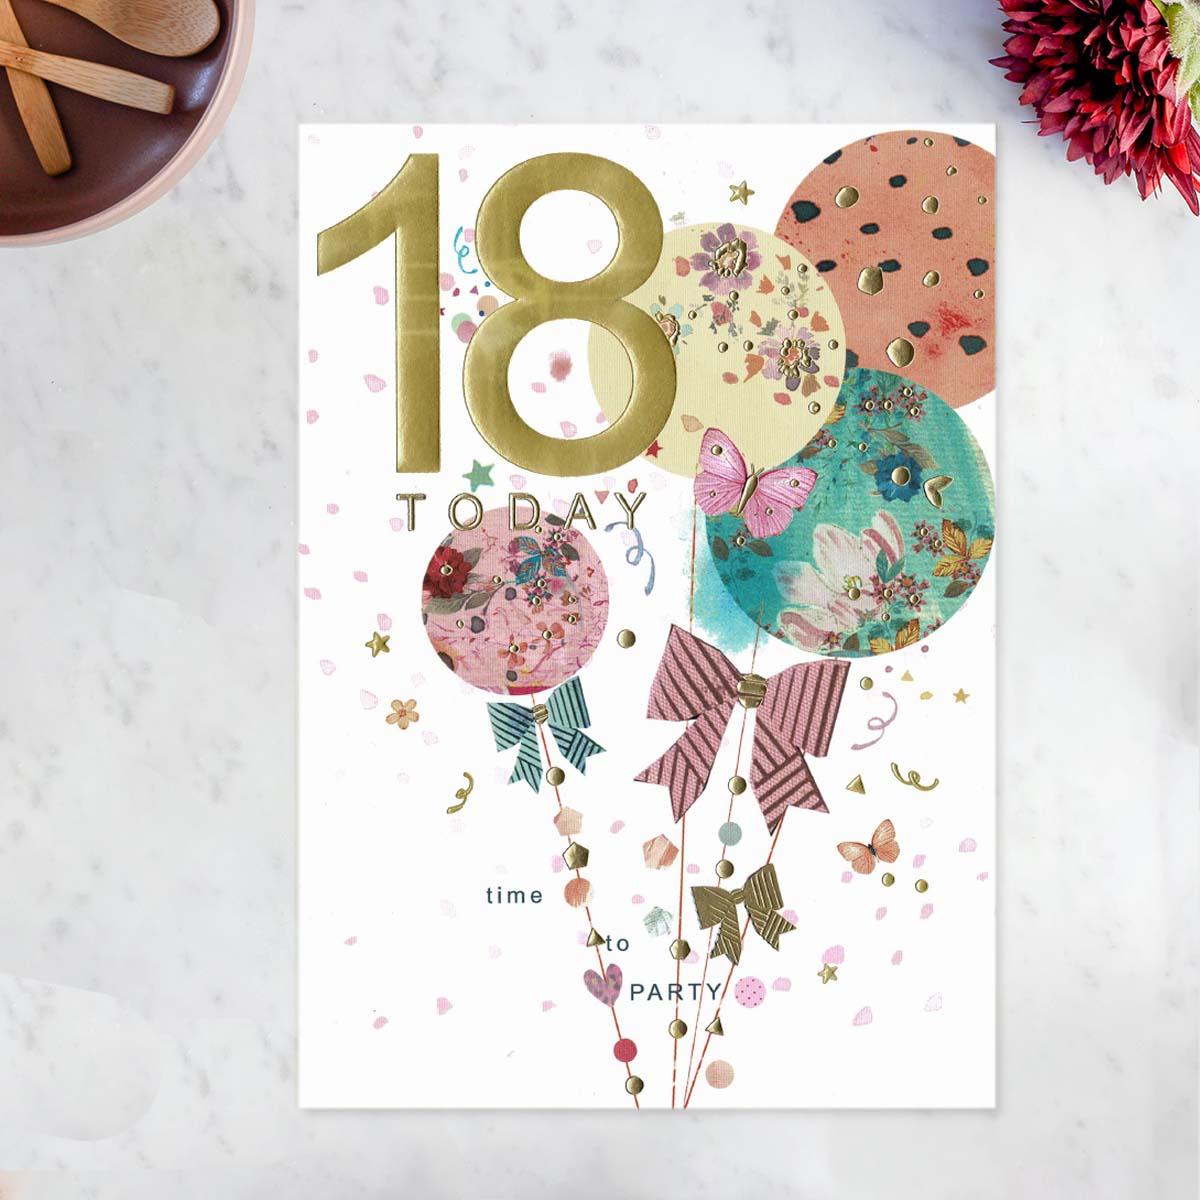 Pinata - 18 Today Birthday Balloons Card Front Image